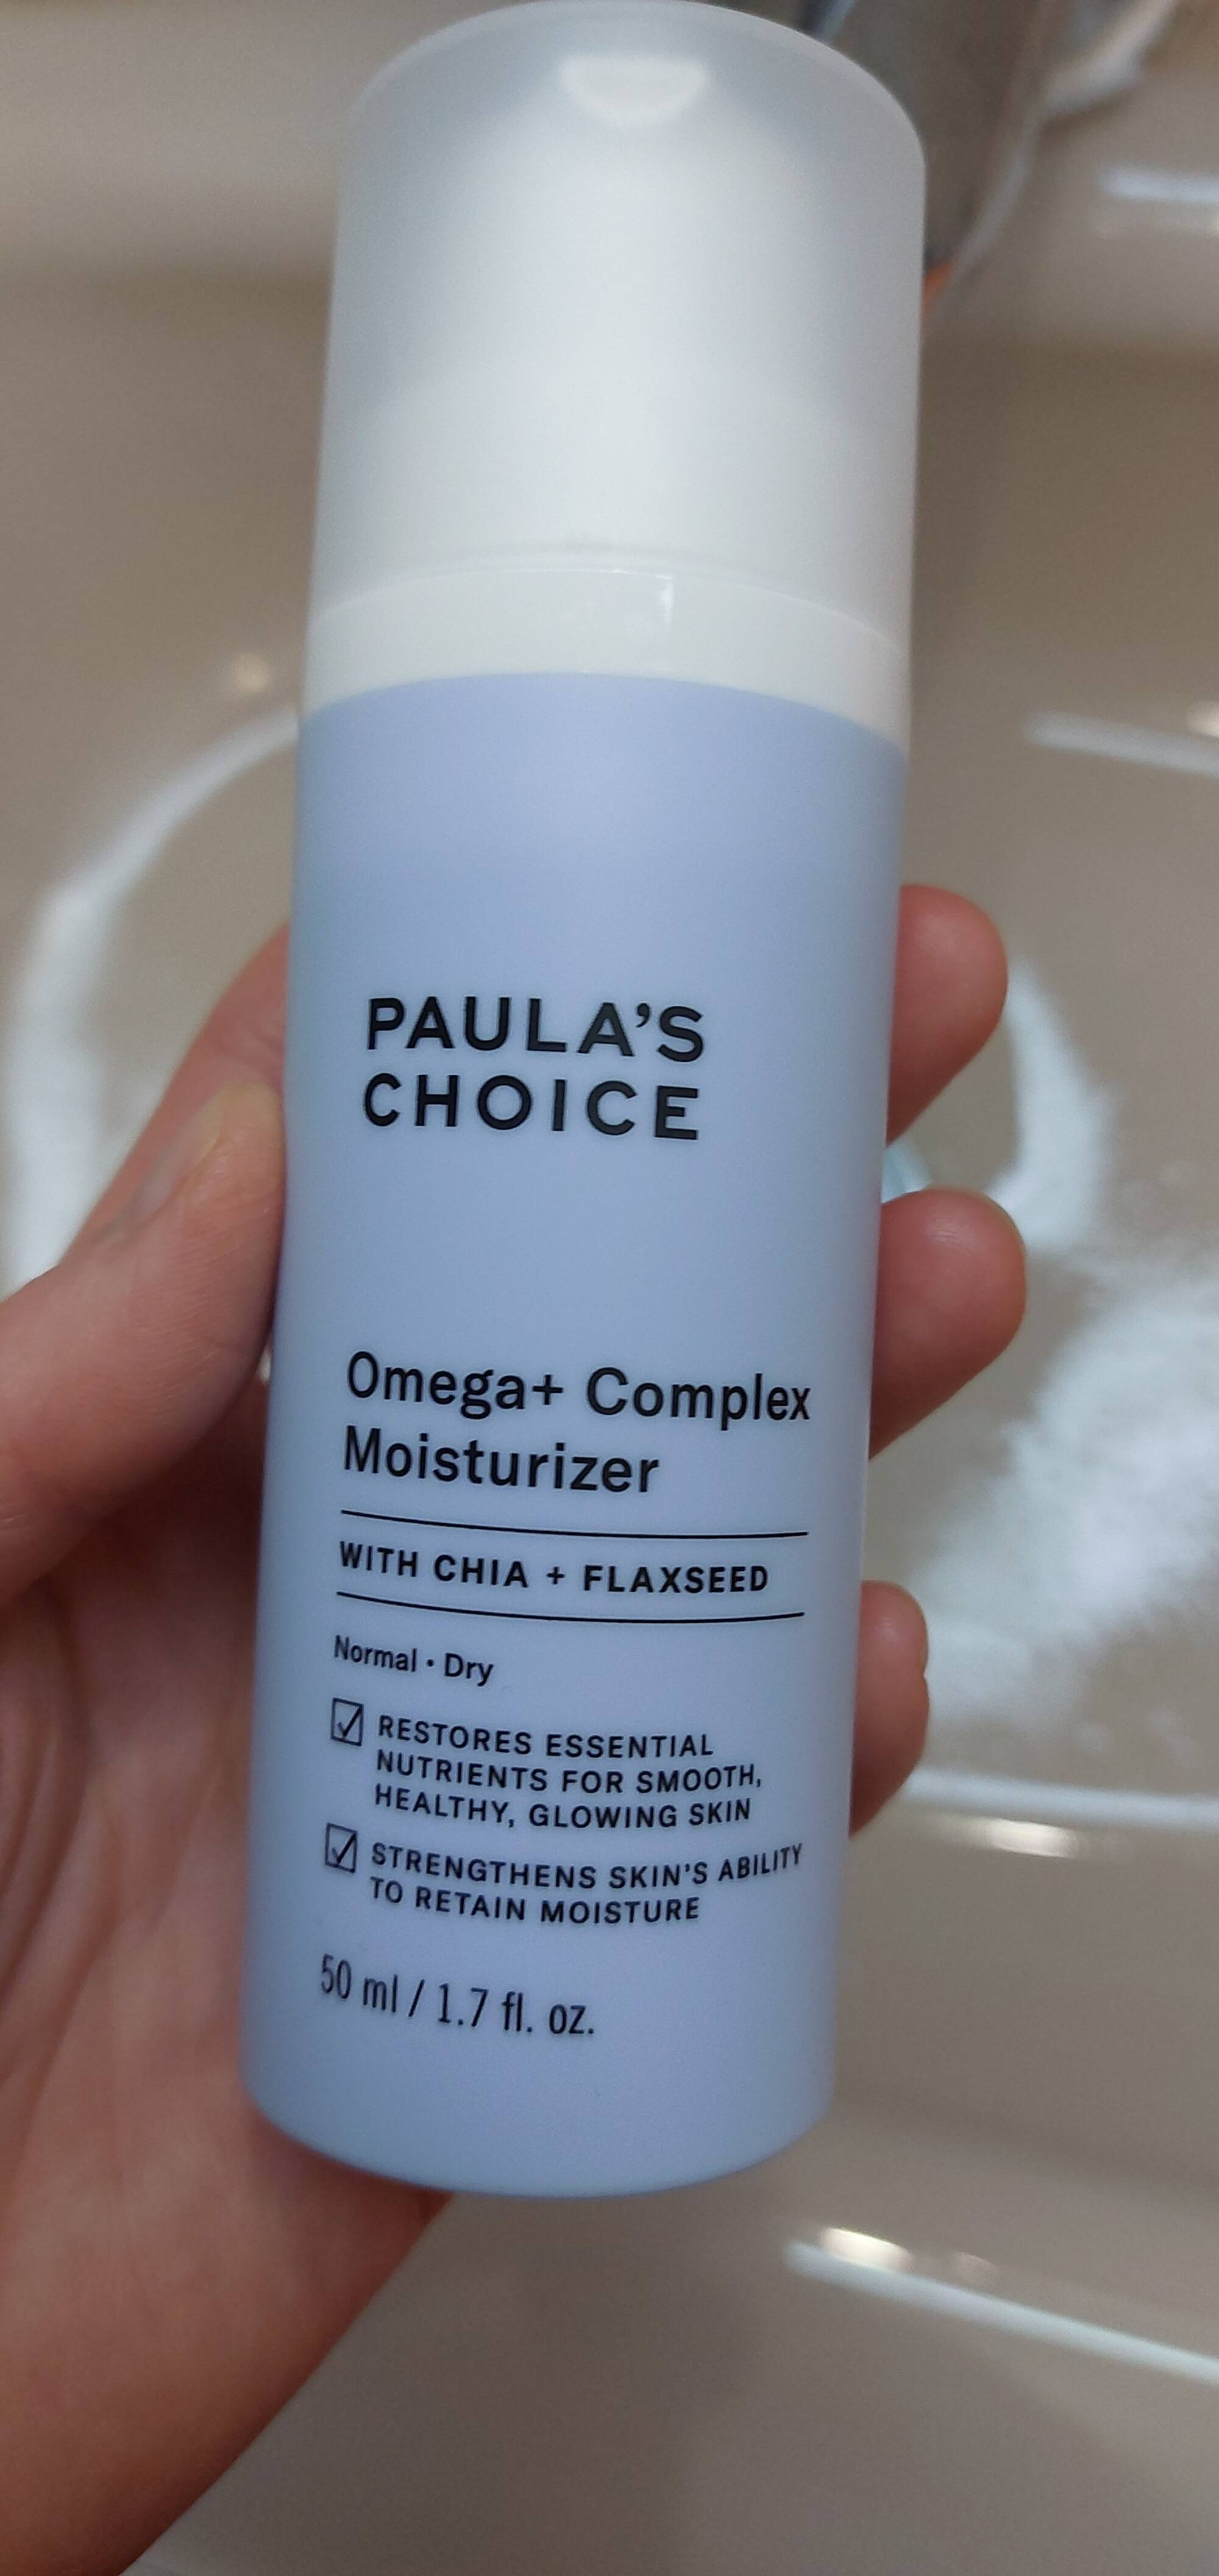 PAULA'S CHOICE - Omega+ complex moisturizer 